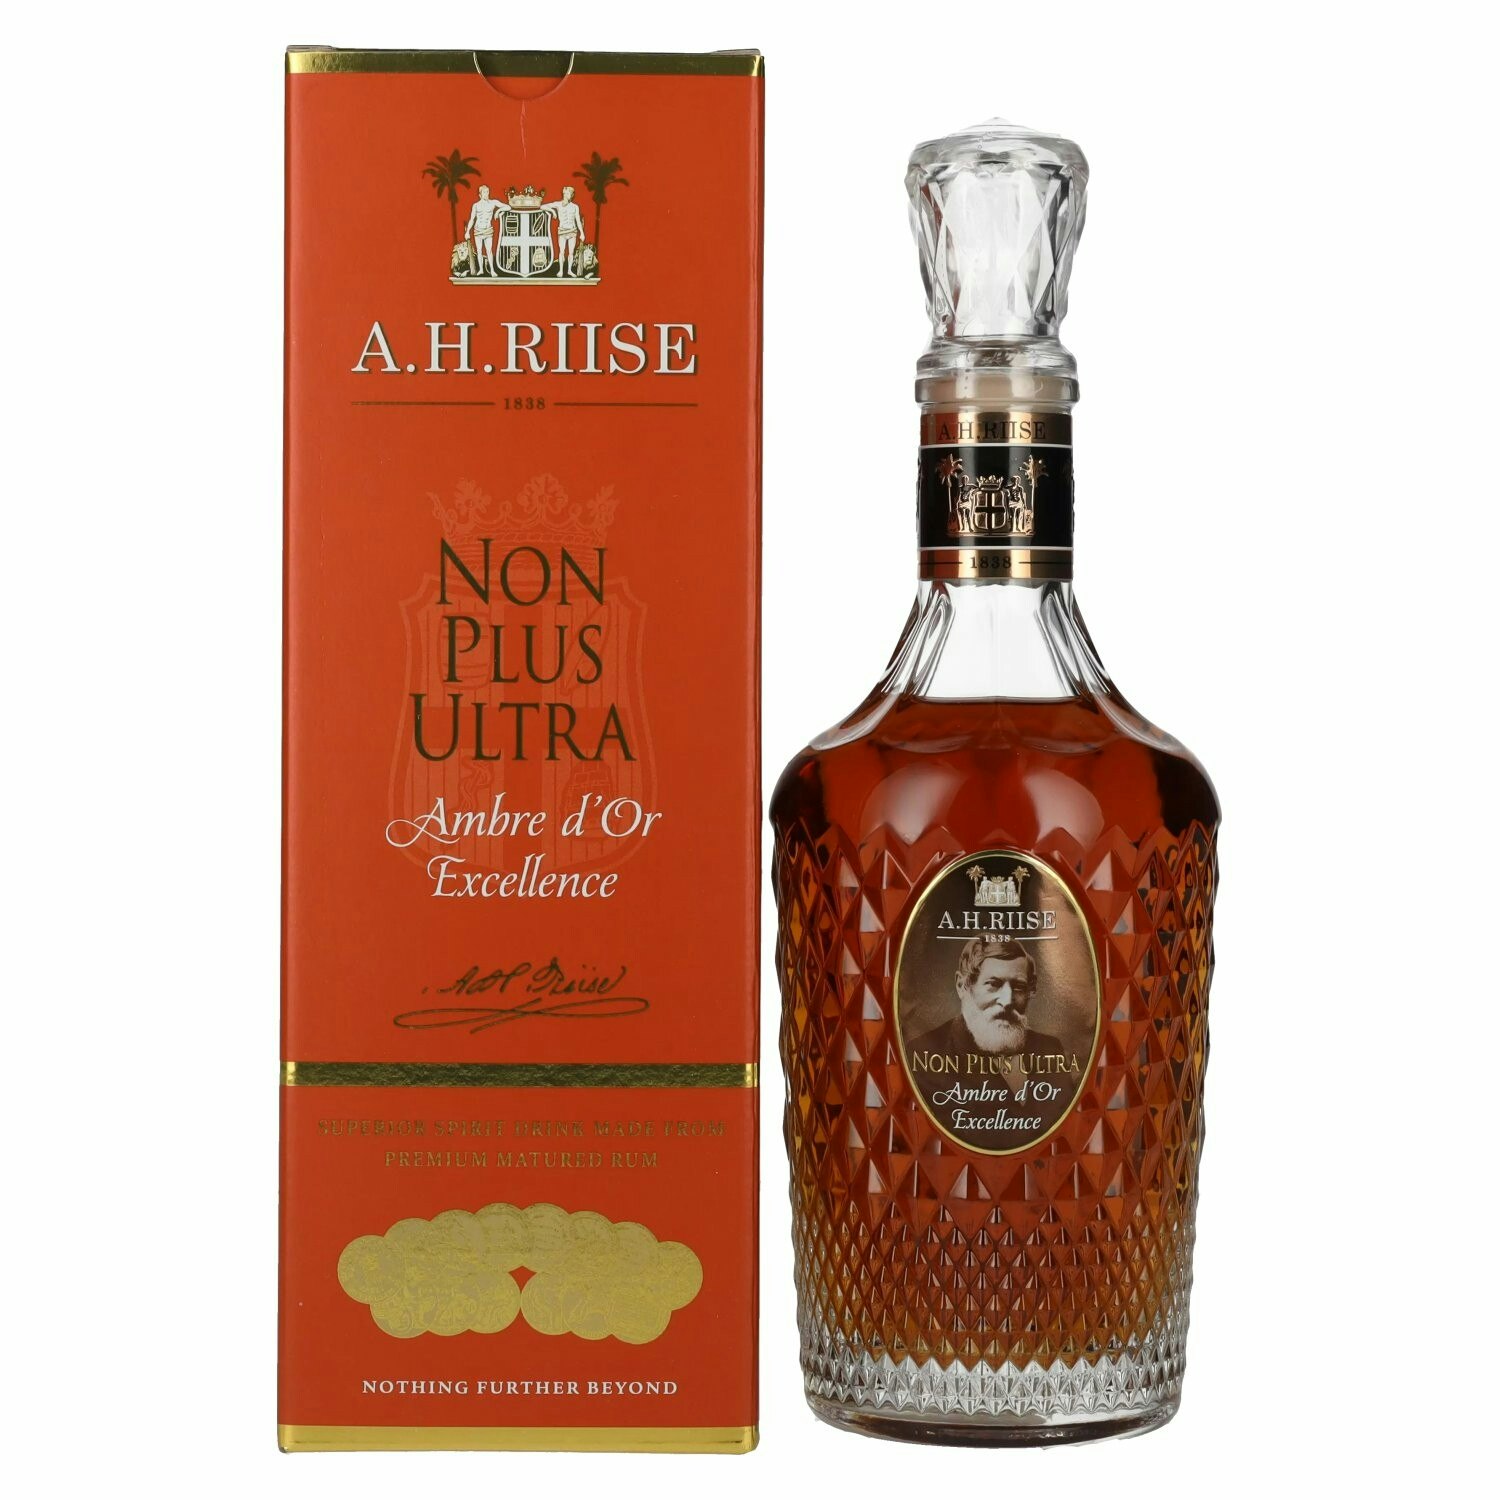 A.H. Riise NON PLUS ULTRA Ambre d'Or 42% Vol. 0,7l in Giftbox